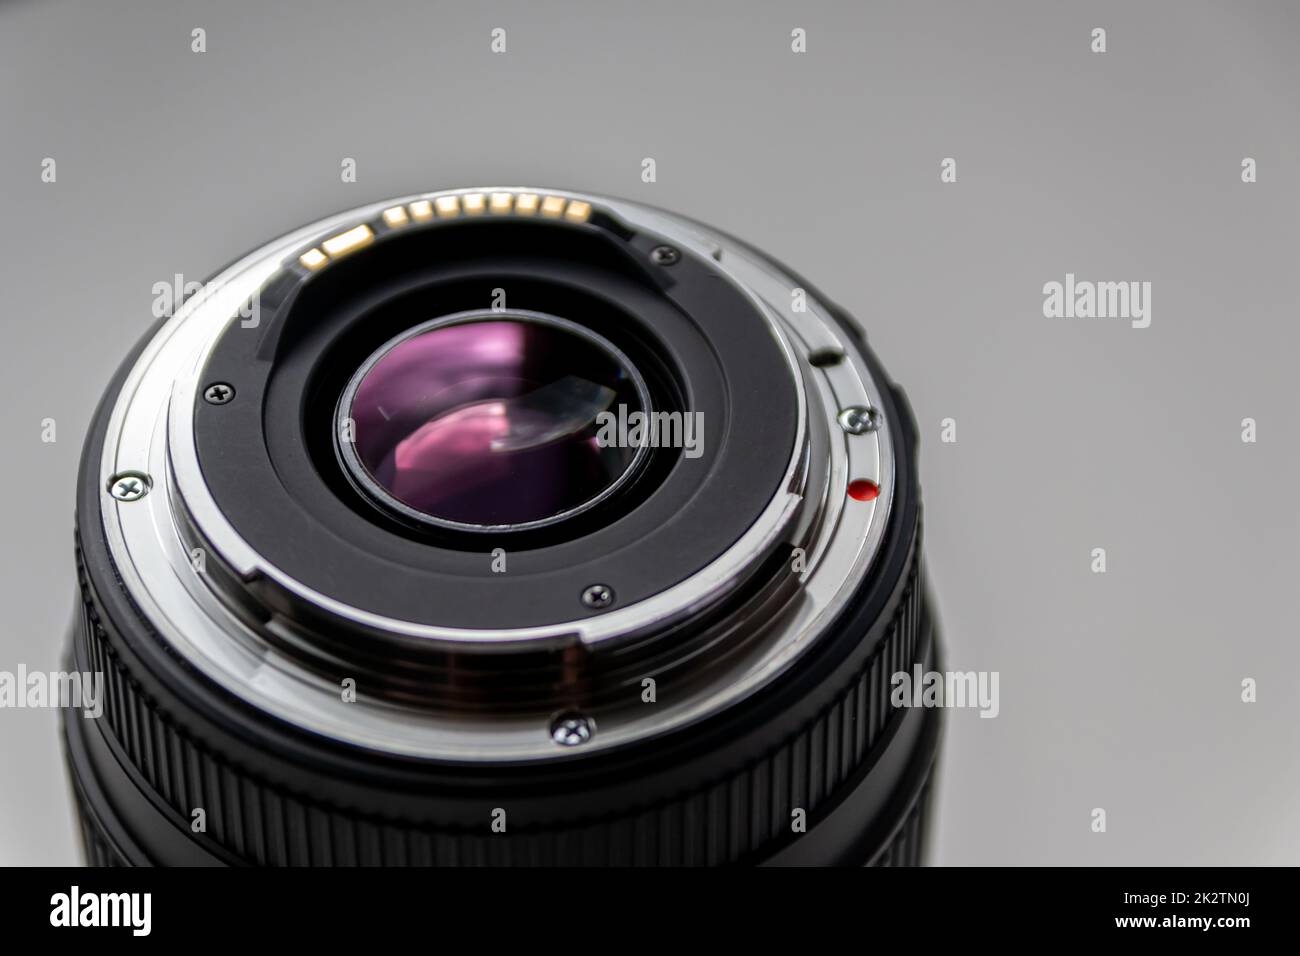 Rückseite eines objektivs einer dslr-Kamera für professionelle Fotografie mit Details der Kamerahalterung in Makroansicht und wunderschönen Objektivdetails für optische Präzision bei Porträtaufnahmen Stockfoto